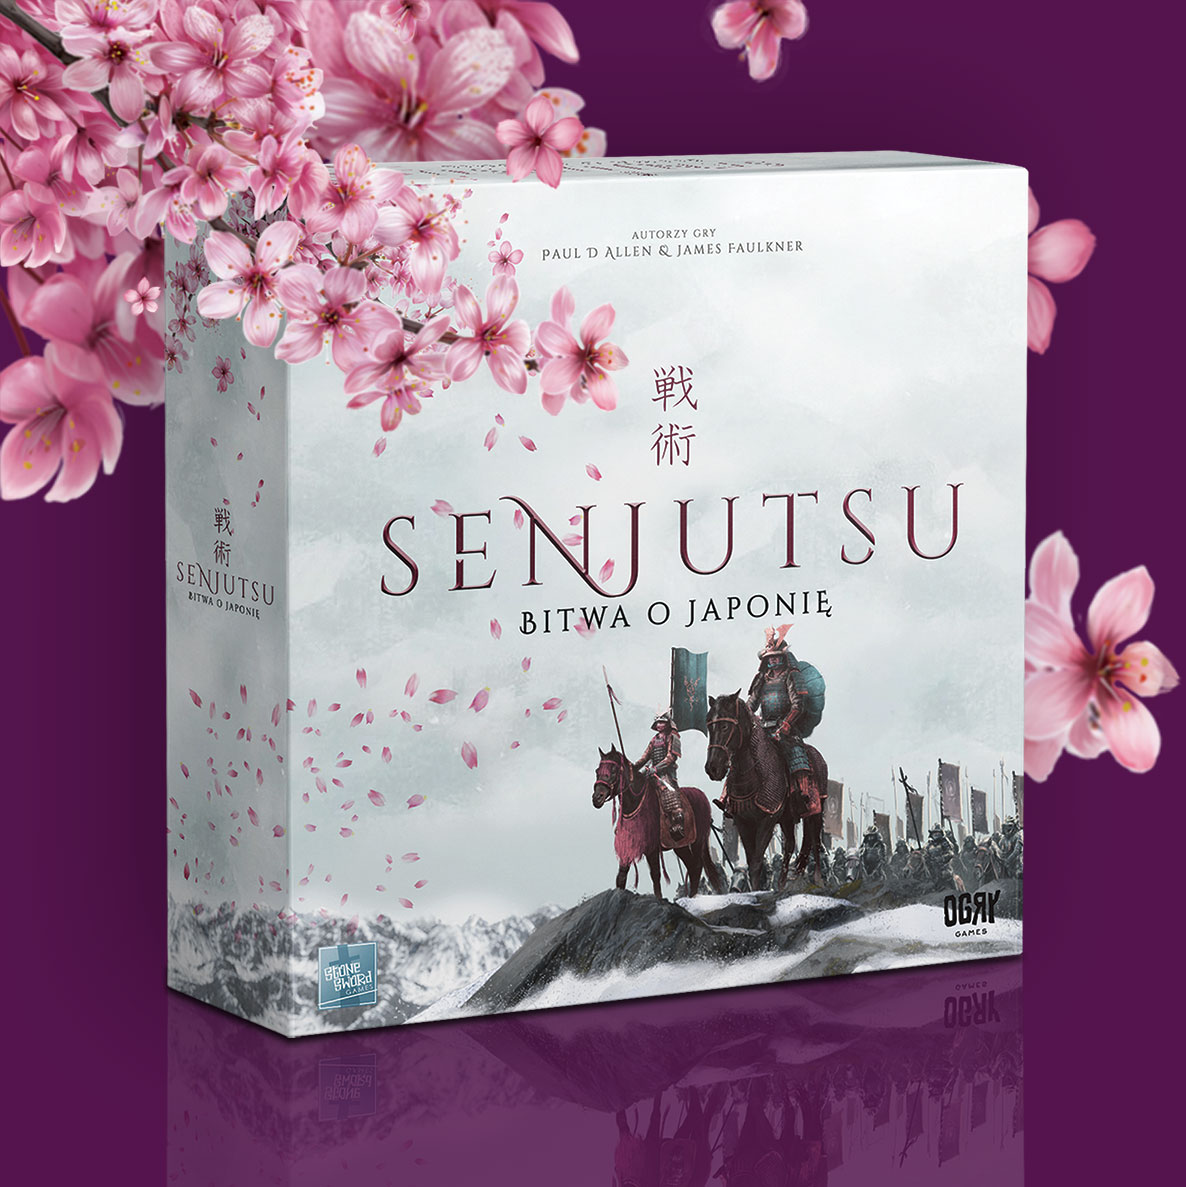 Senjutsu: Bitwa o Japonię, pudełko gry w przedsprzedaży od Ogry Games